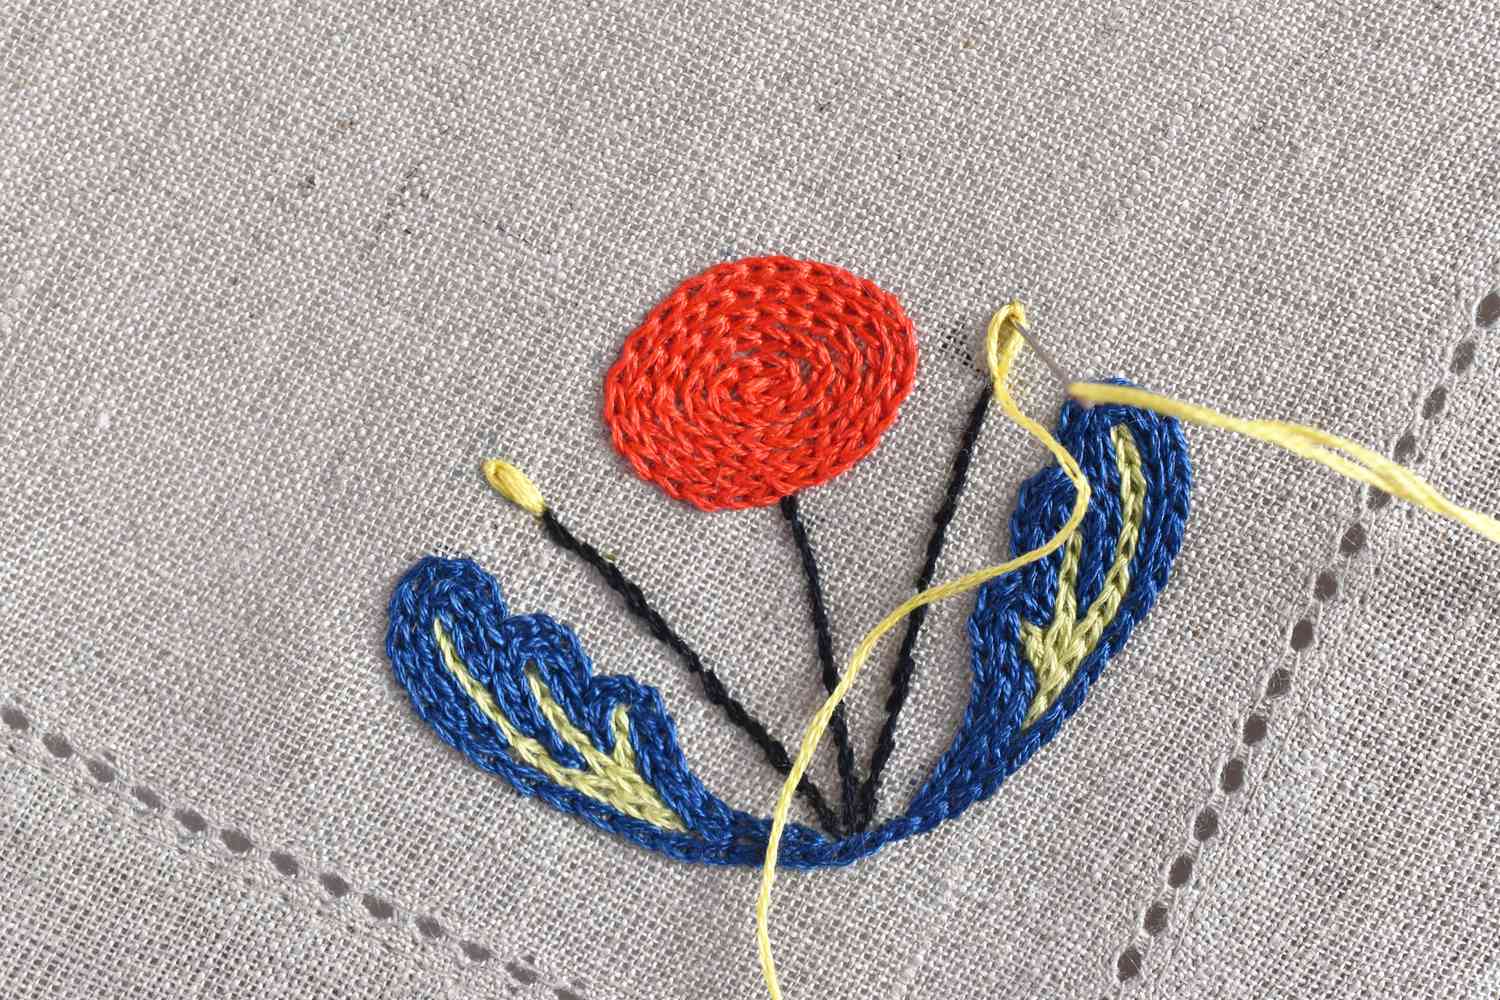 Embroidering a Scandinavian flower